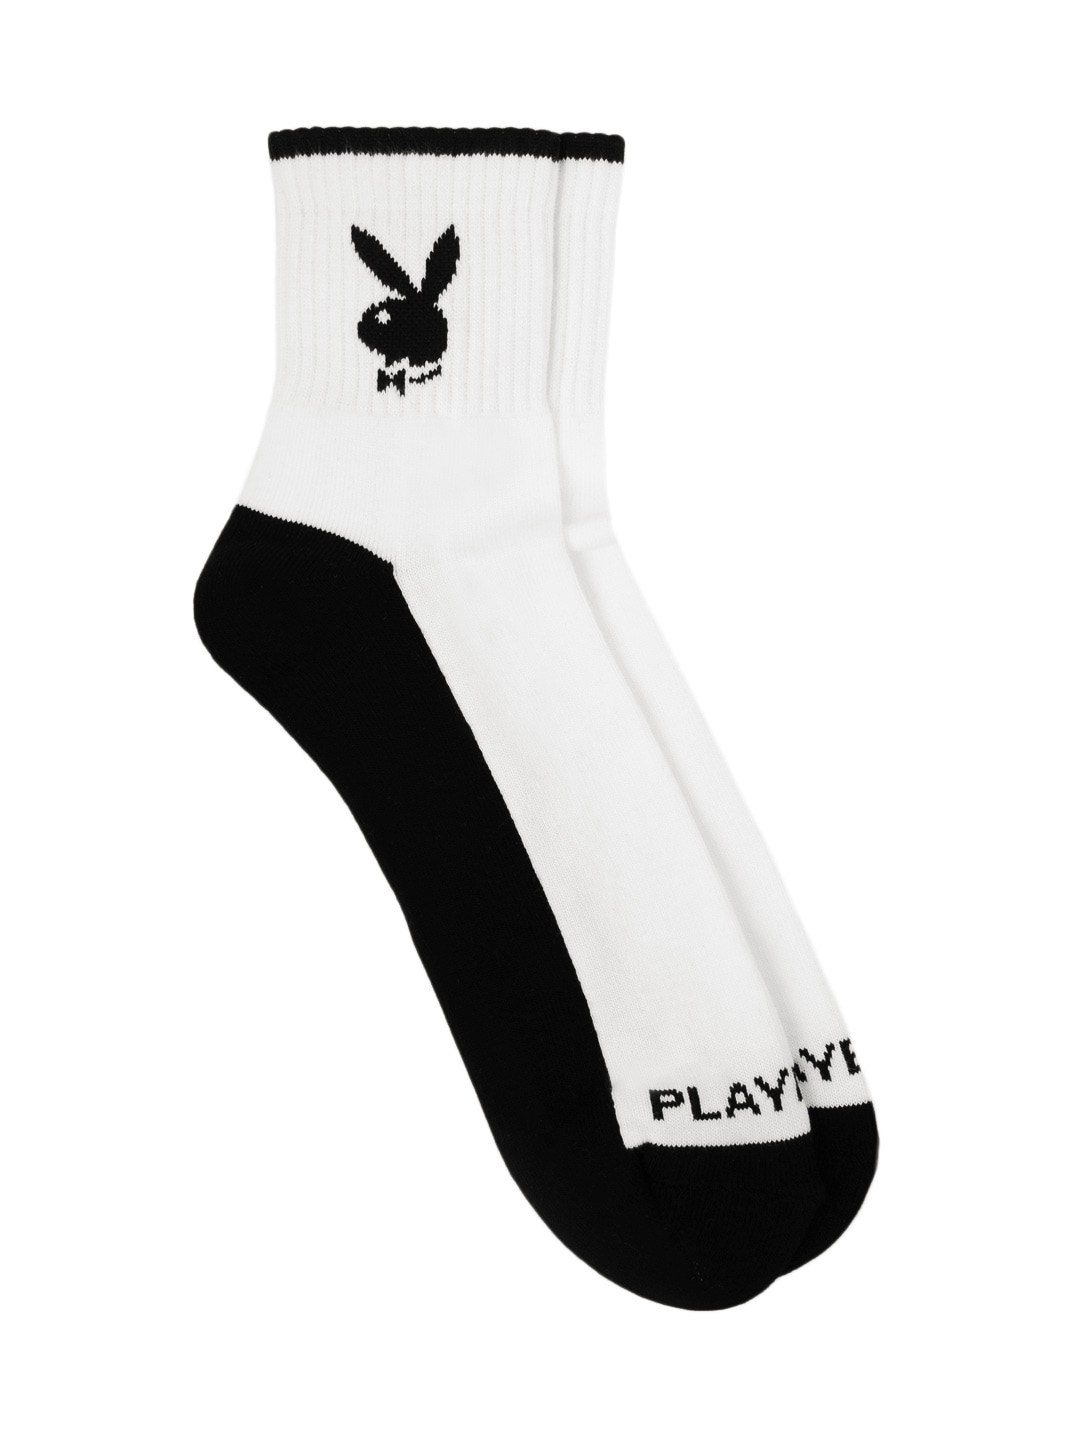 Playboy Men Black & White Socks